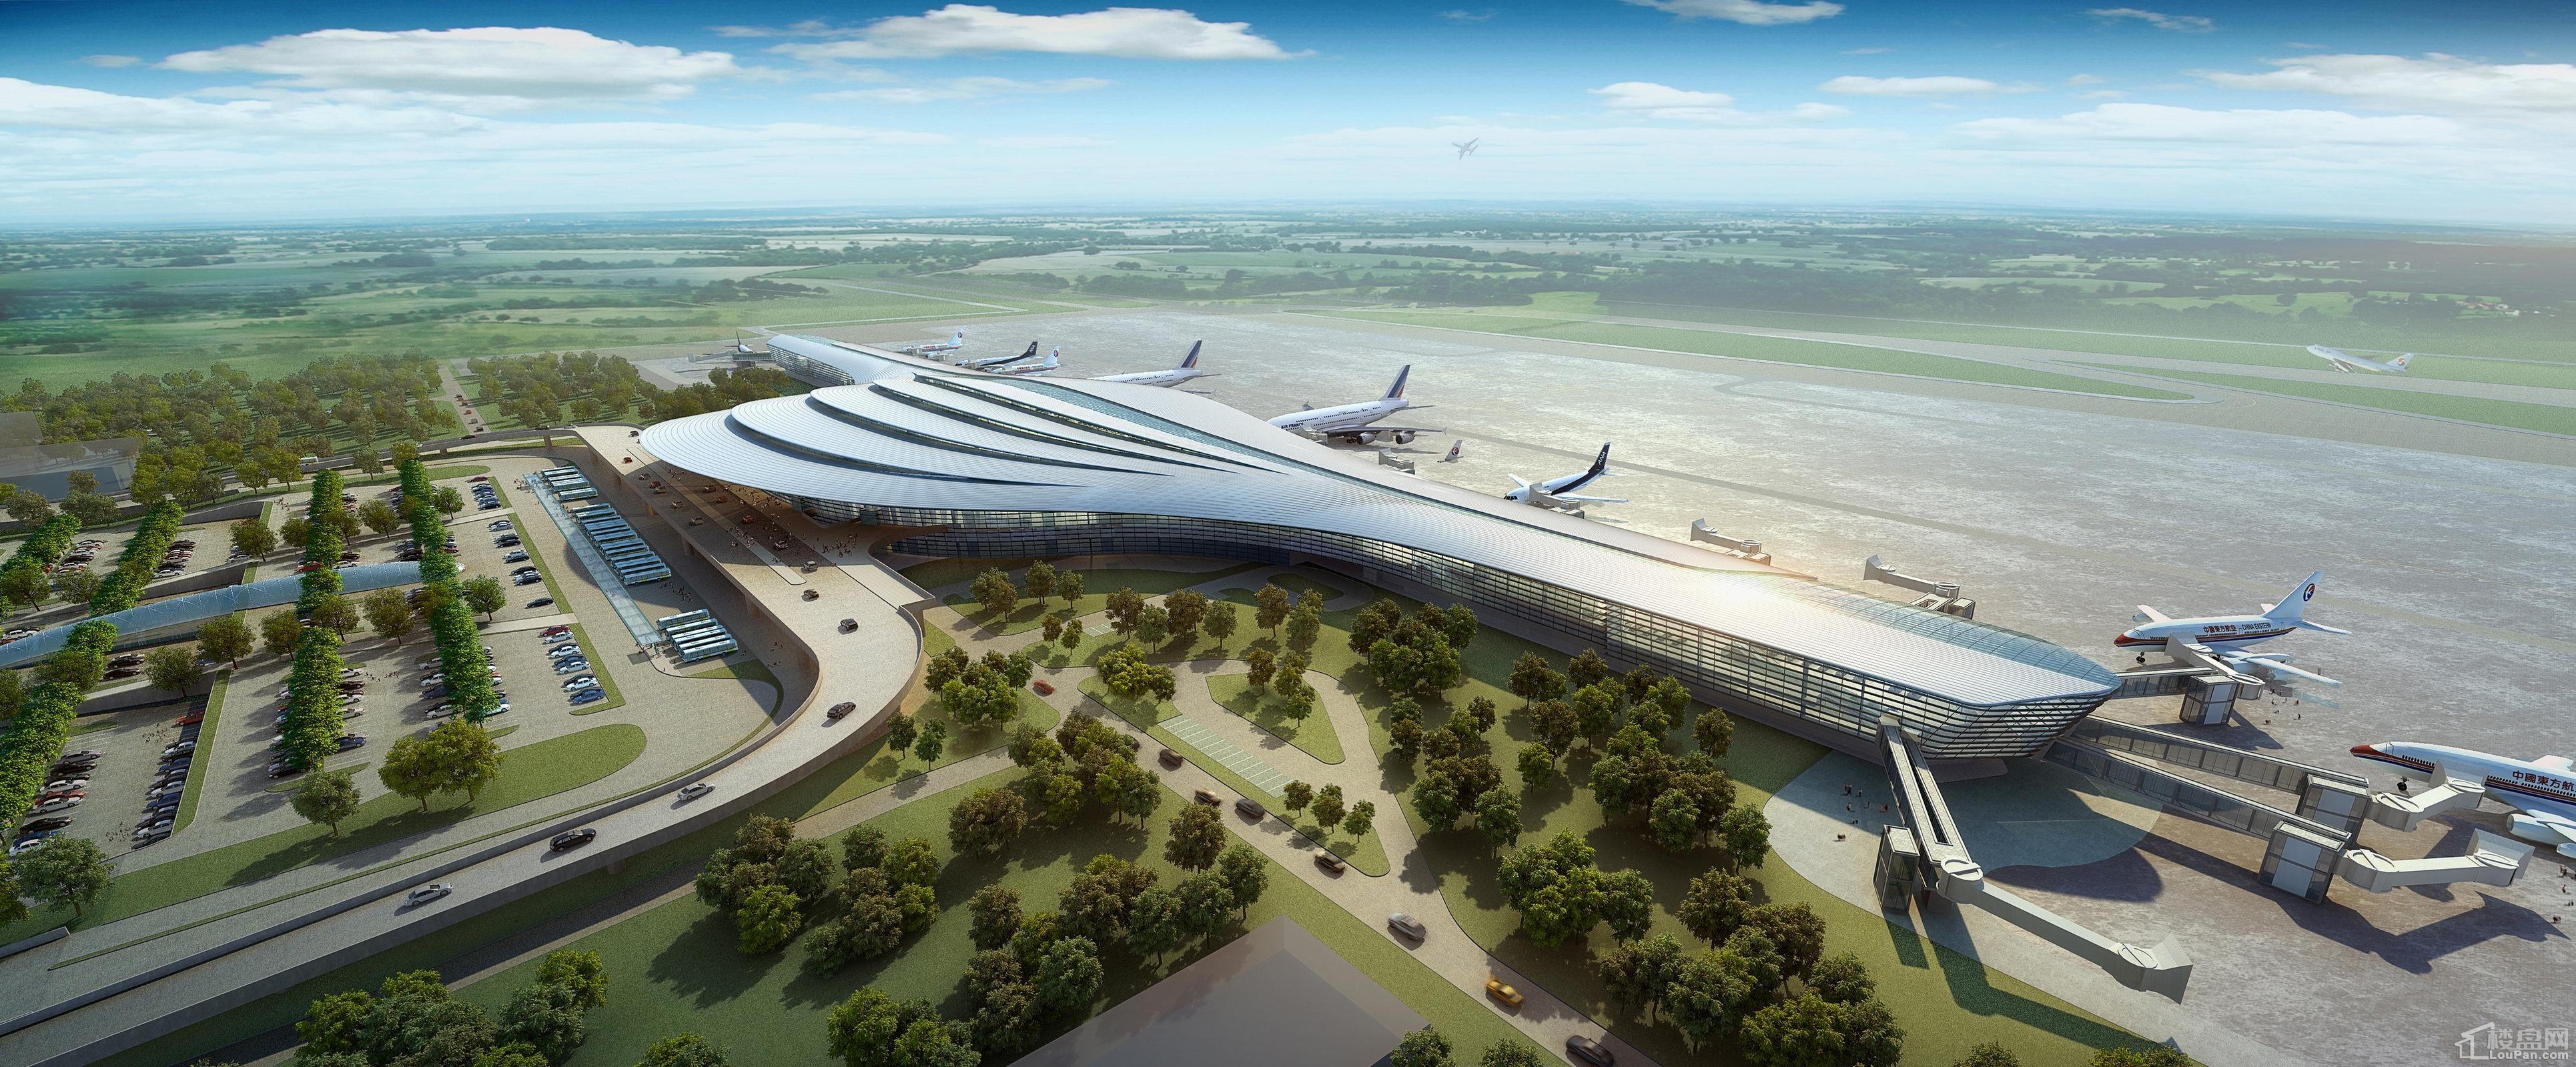 郴州北湖机场吞吐量55万人次货邮吞吐量3000吨未来将有来自全球各地的